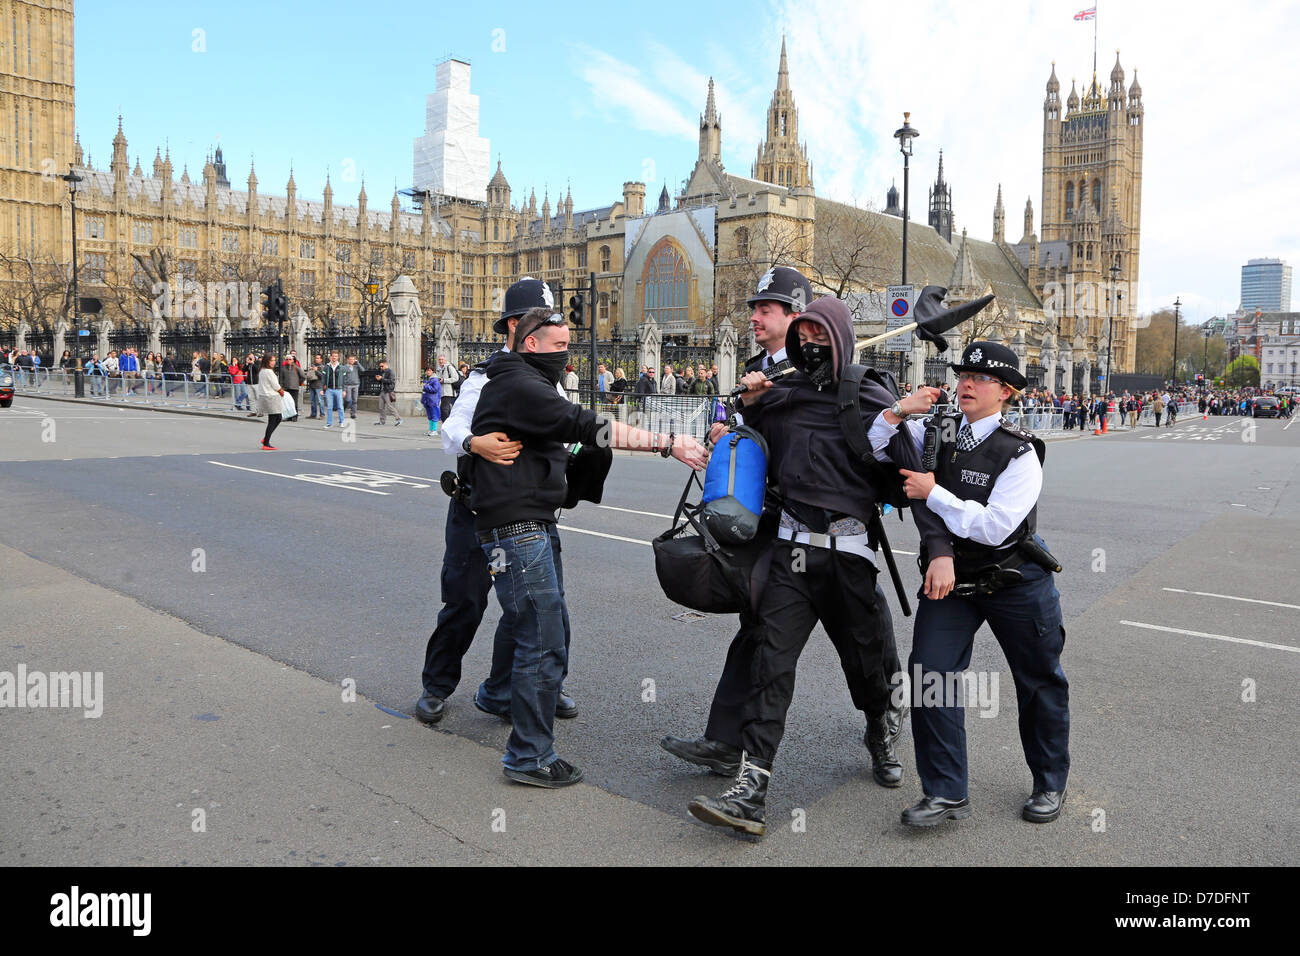 Londres, Reino Unido. El 4 de mayo de 2013. Los manifestantes en el Anonymous UK manifestación anti-austeridad desalojadas de sentarse en la calle por la policía, en Westminster, las Casas del Parlamento, Londres, Inglaterra. Crédito: Paul Brown / Alamy Live News Foto de stock